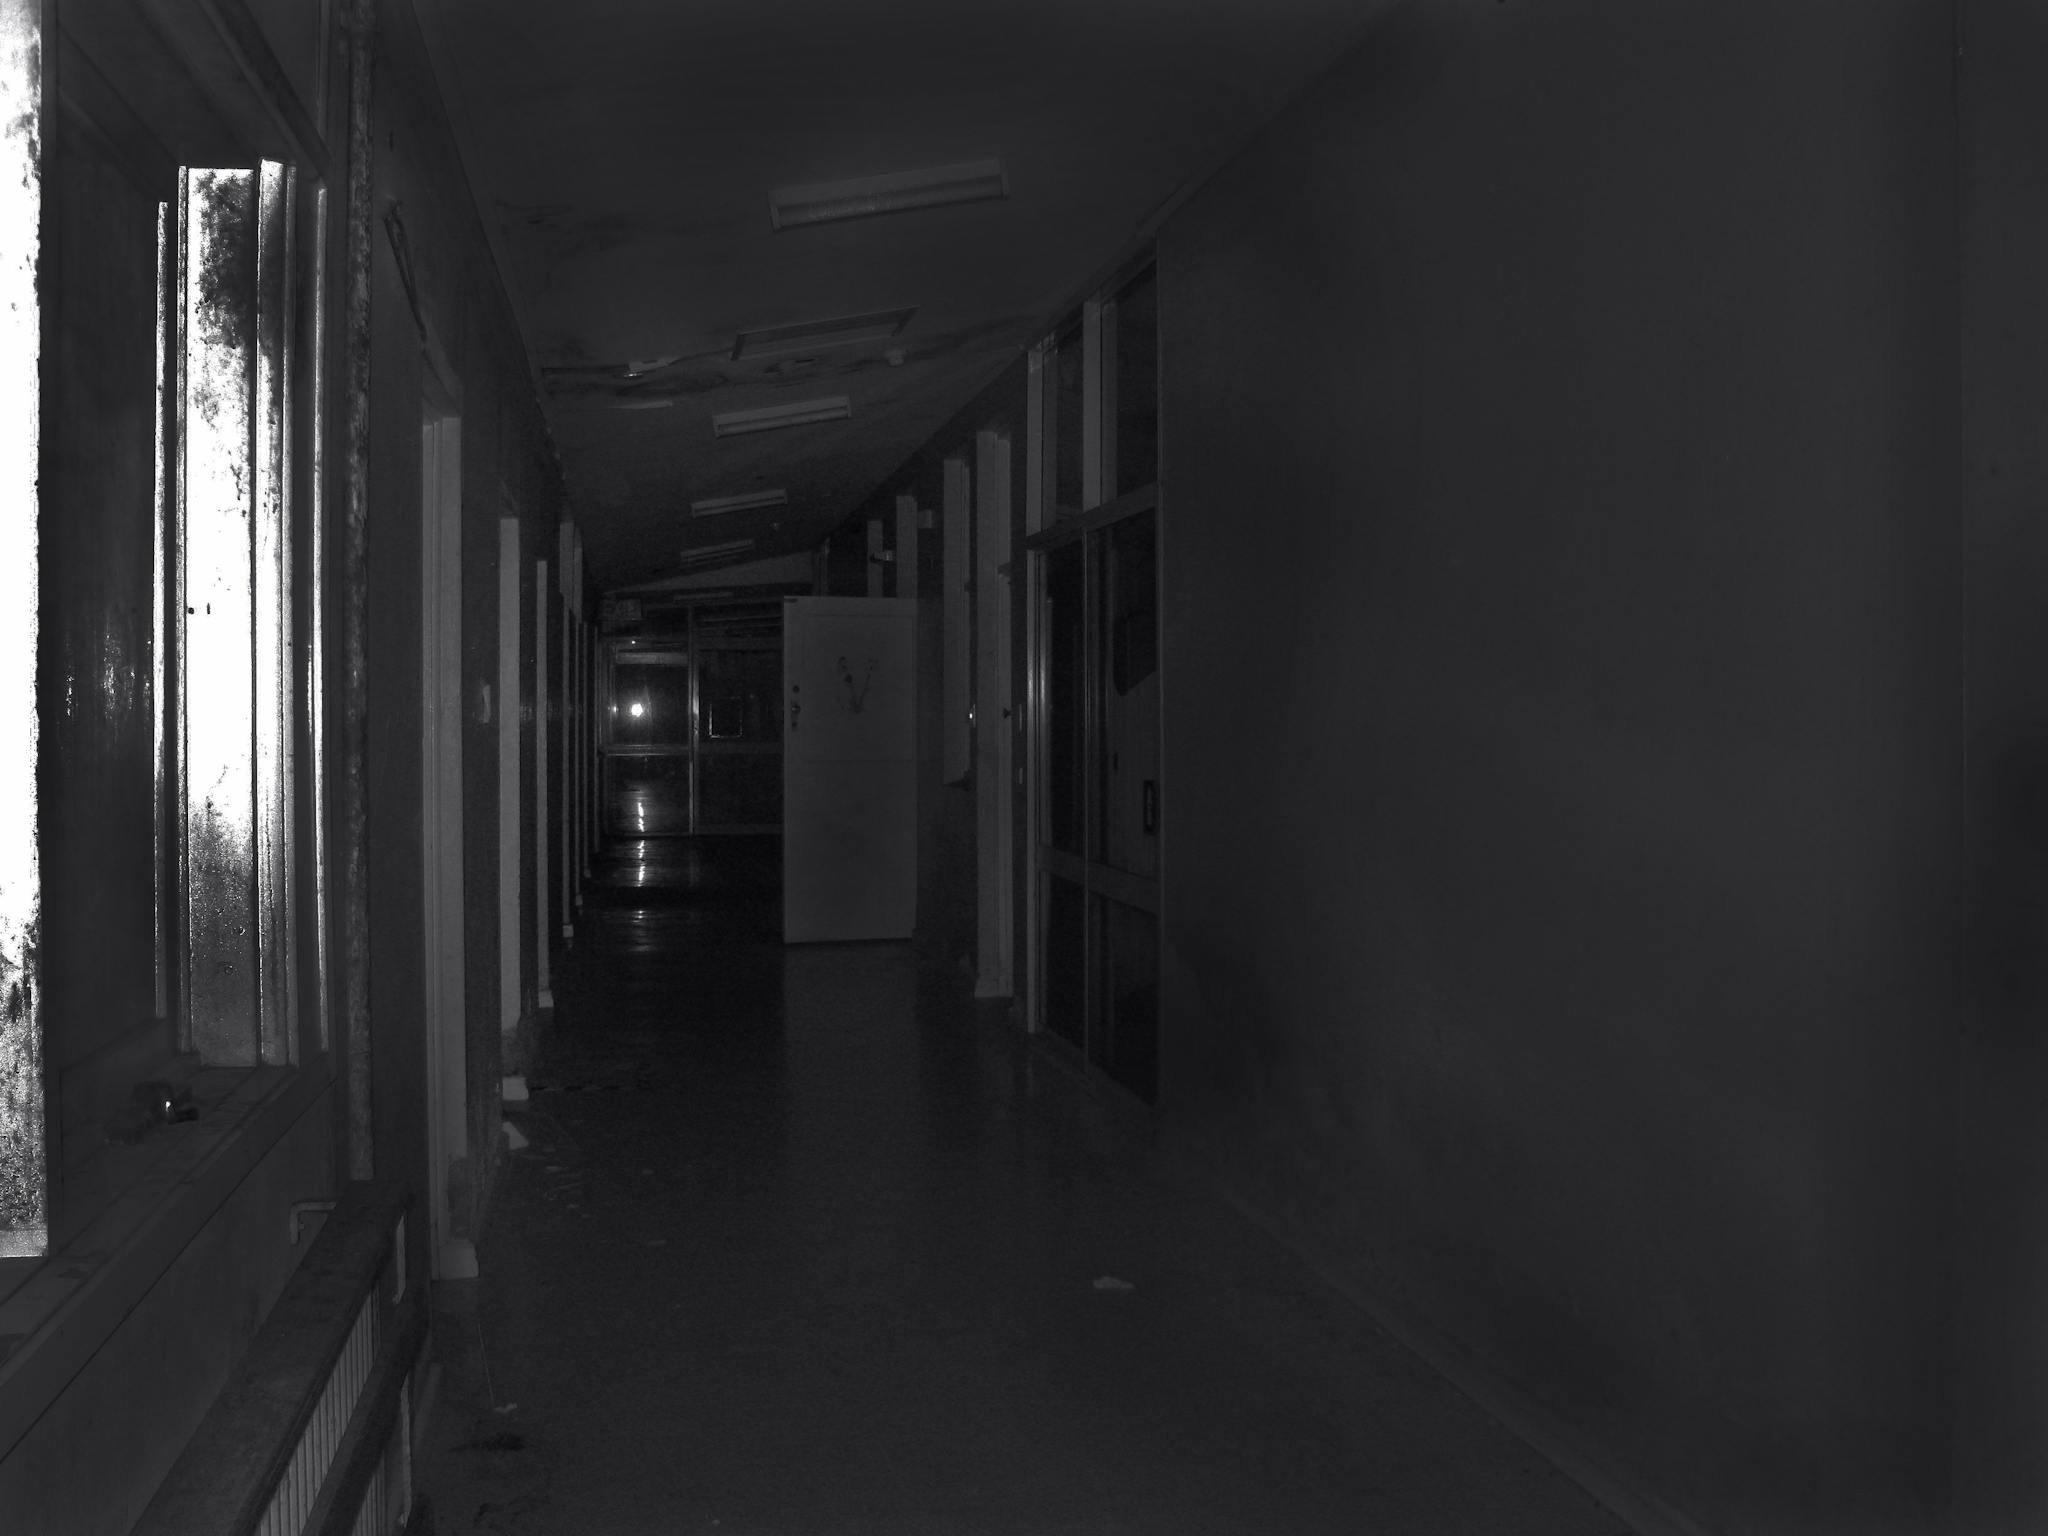 Inside Grevillea - Infirmary Ward